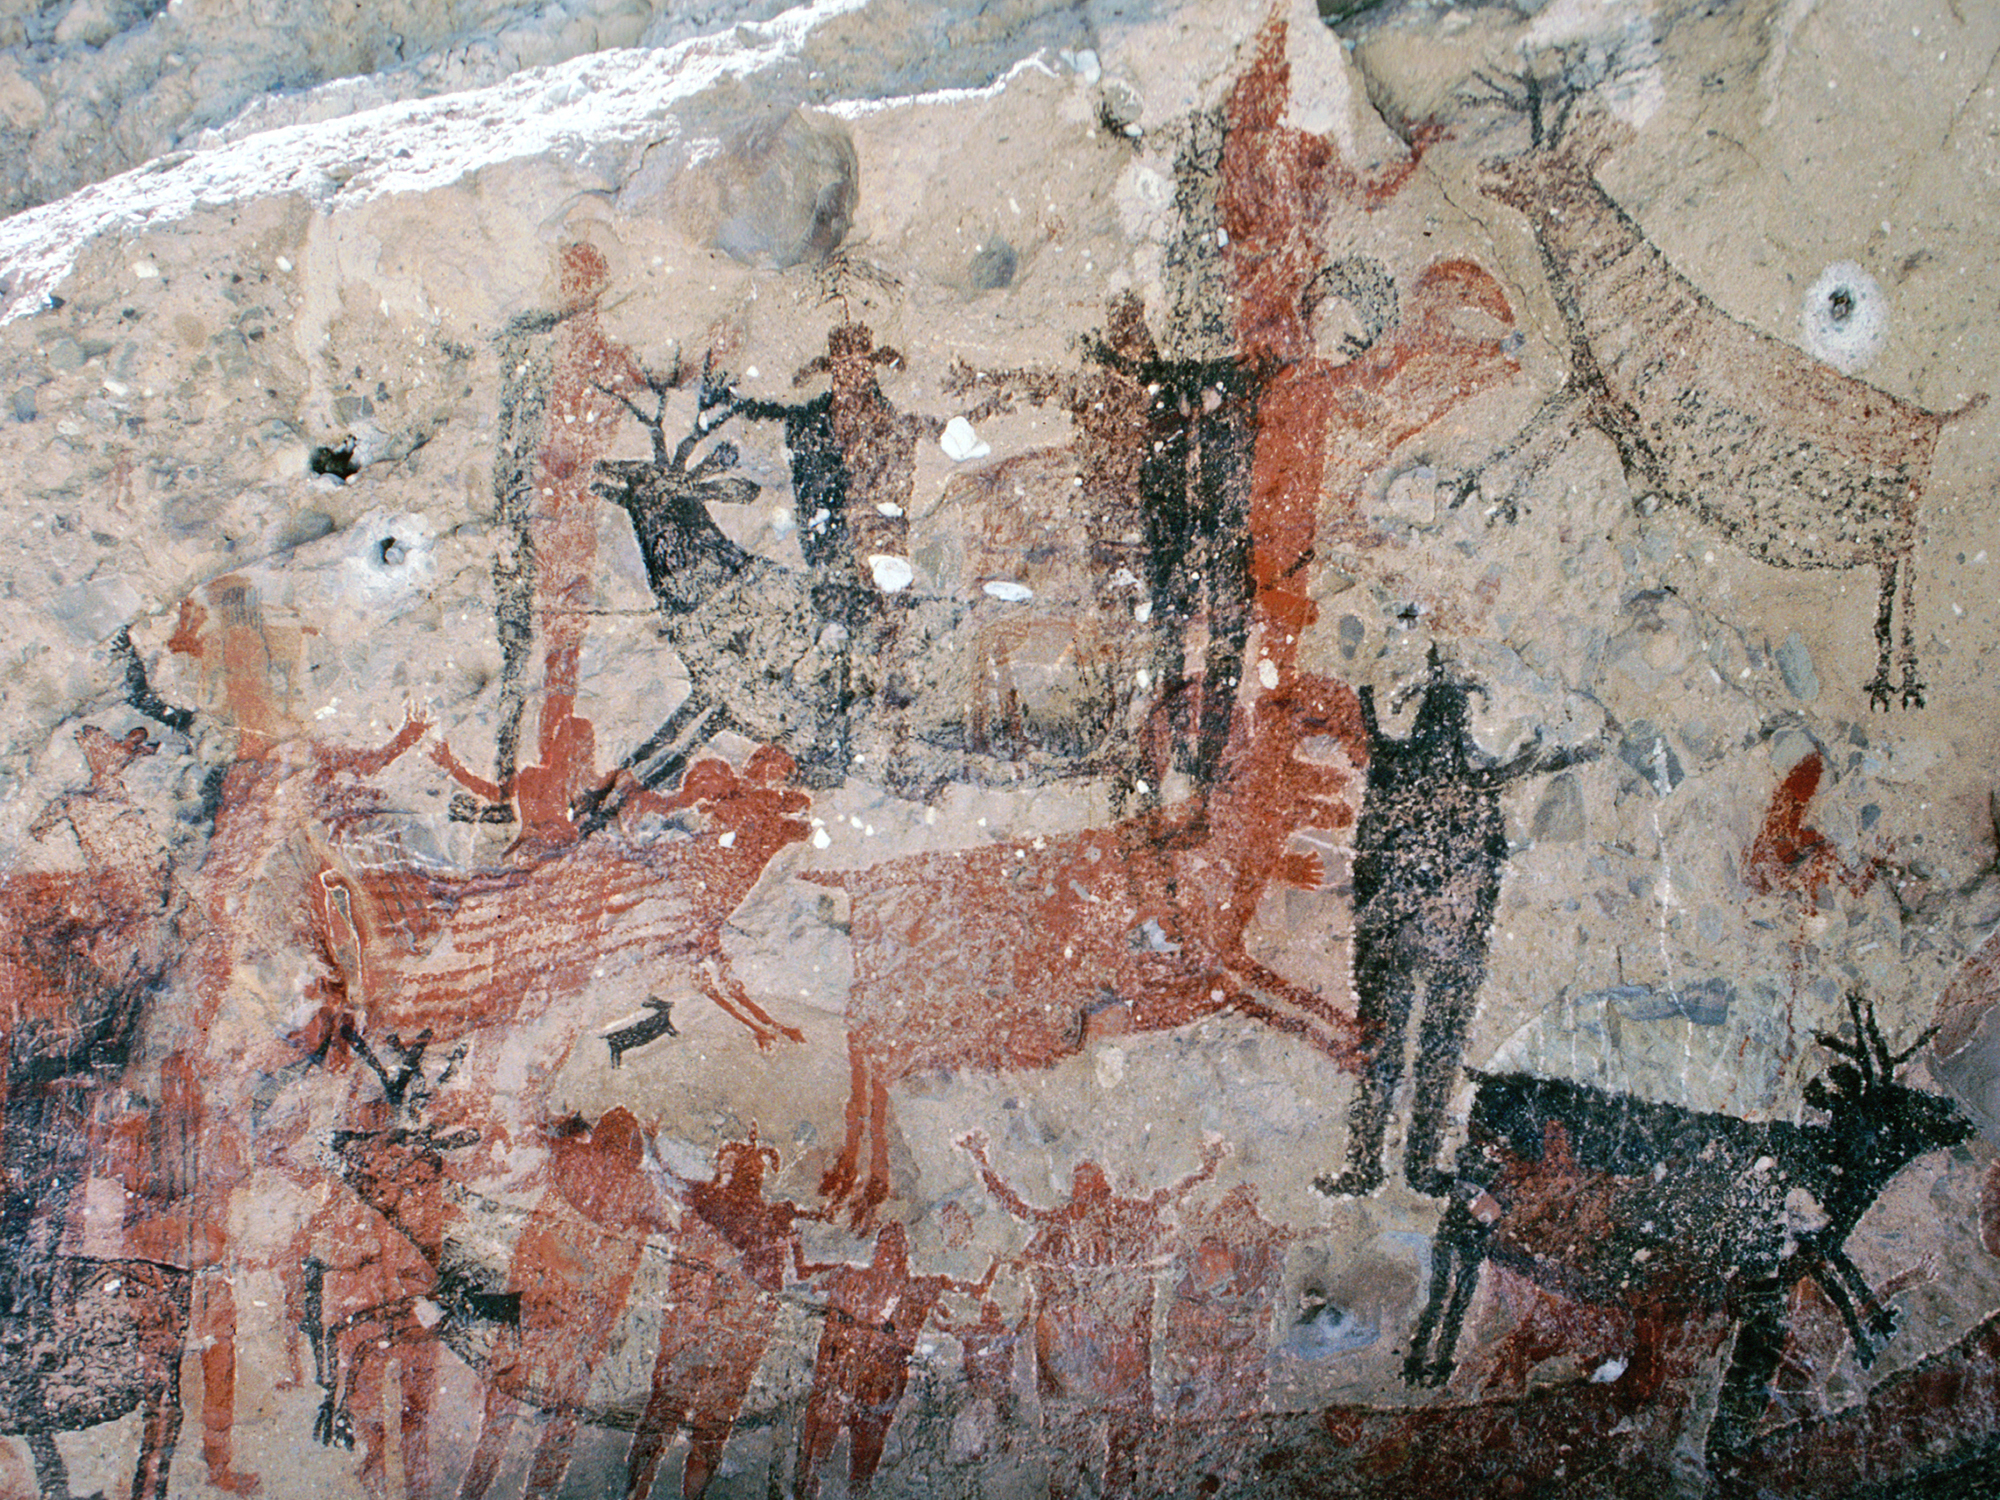 Baja California Great Murals - Cave Paintings Gallery